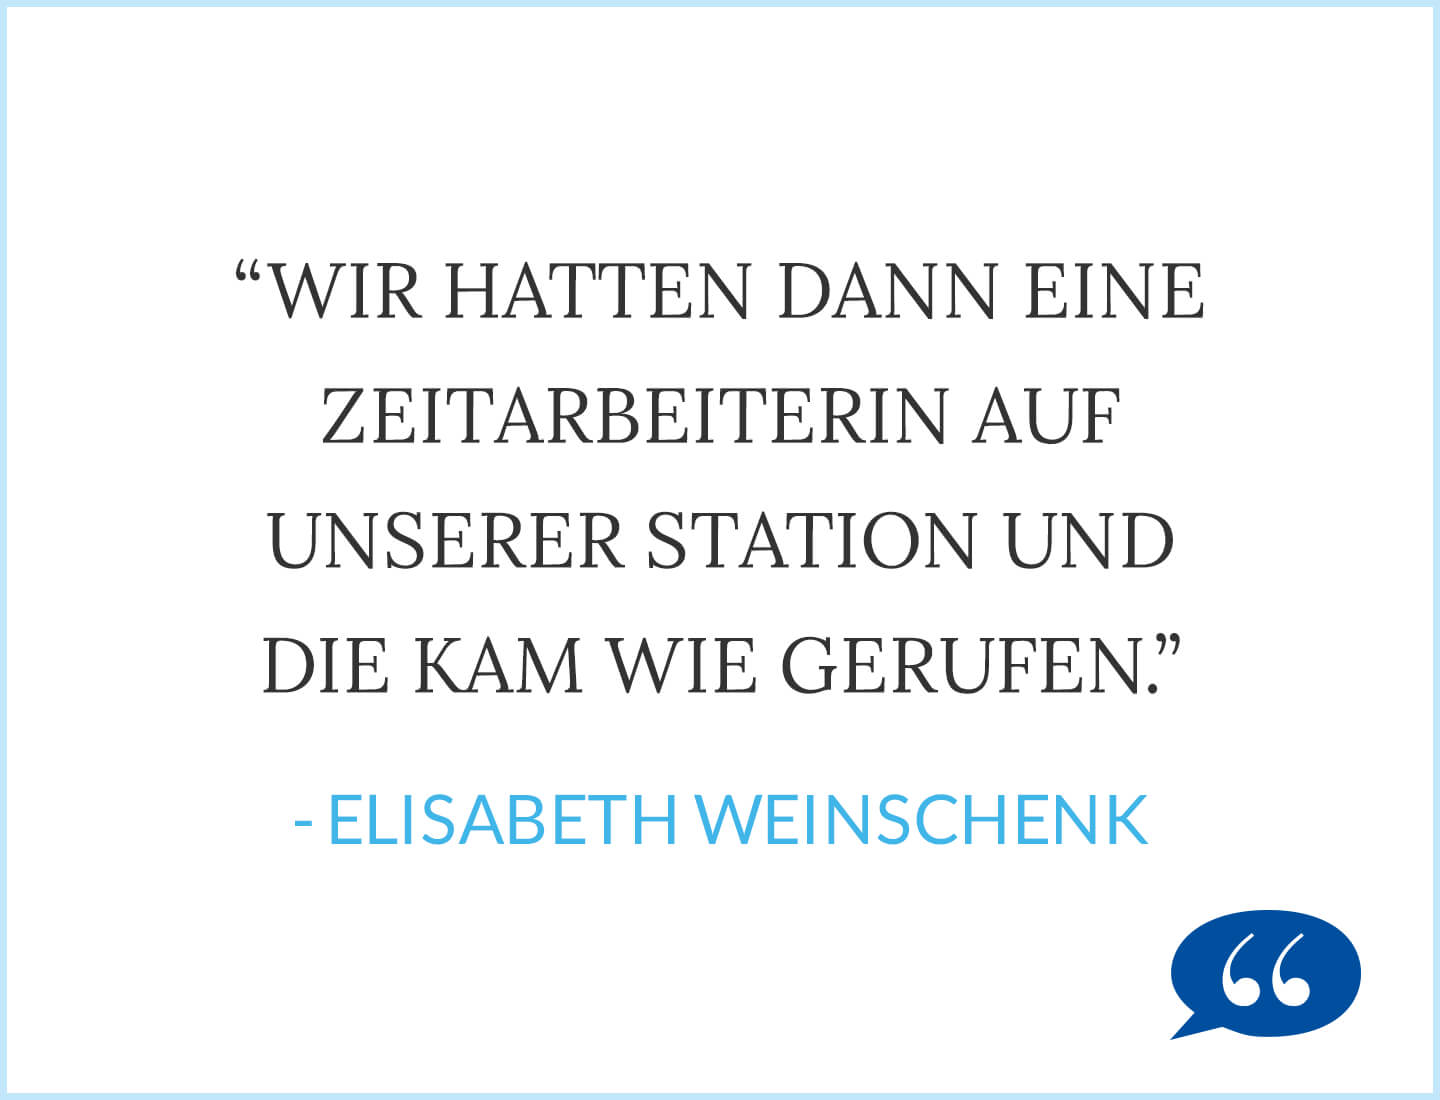 Zitat: Wir hatten dann eine Zeitarbeiterin auf unserer Station und die kam wie gerufen. - Elisabeth Weinschenk